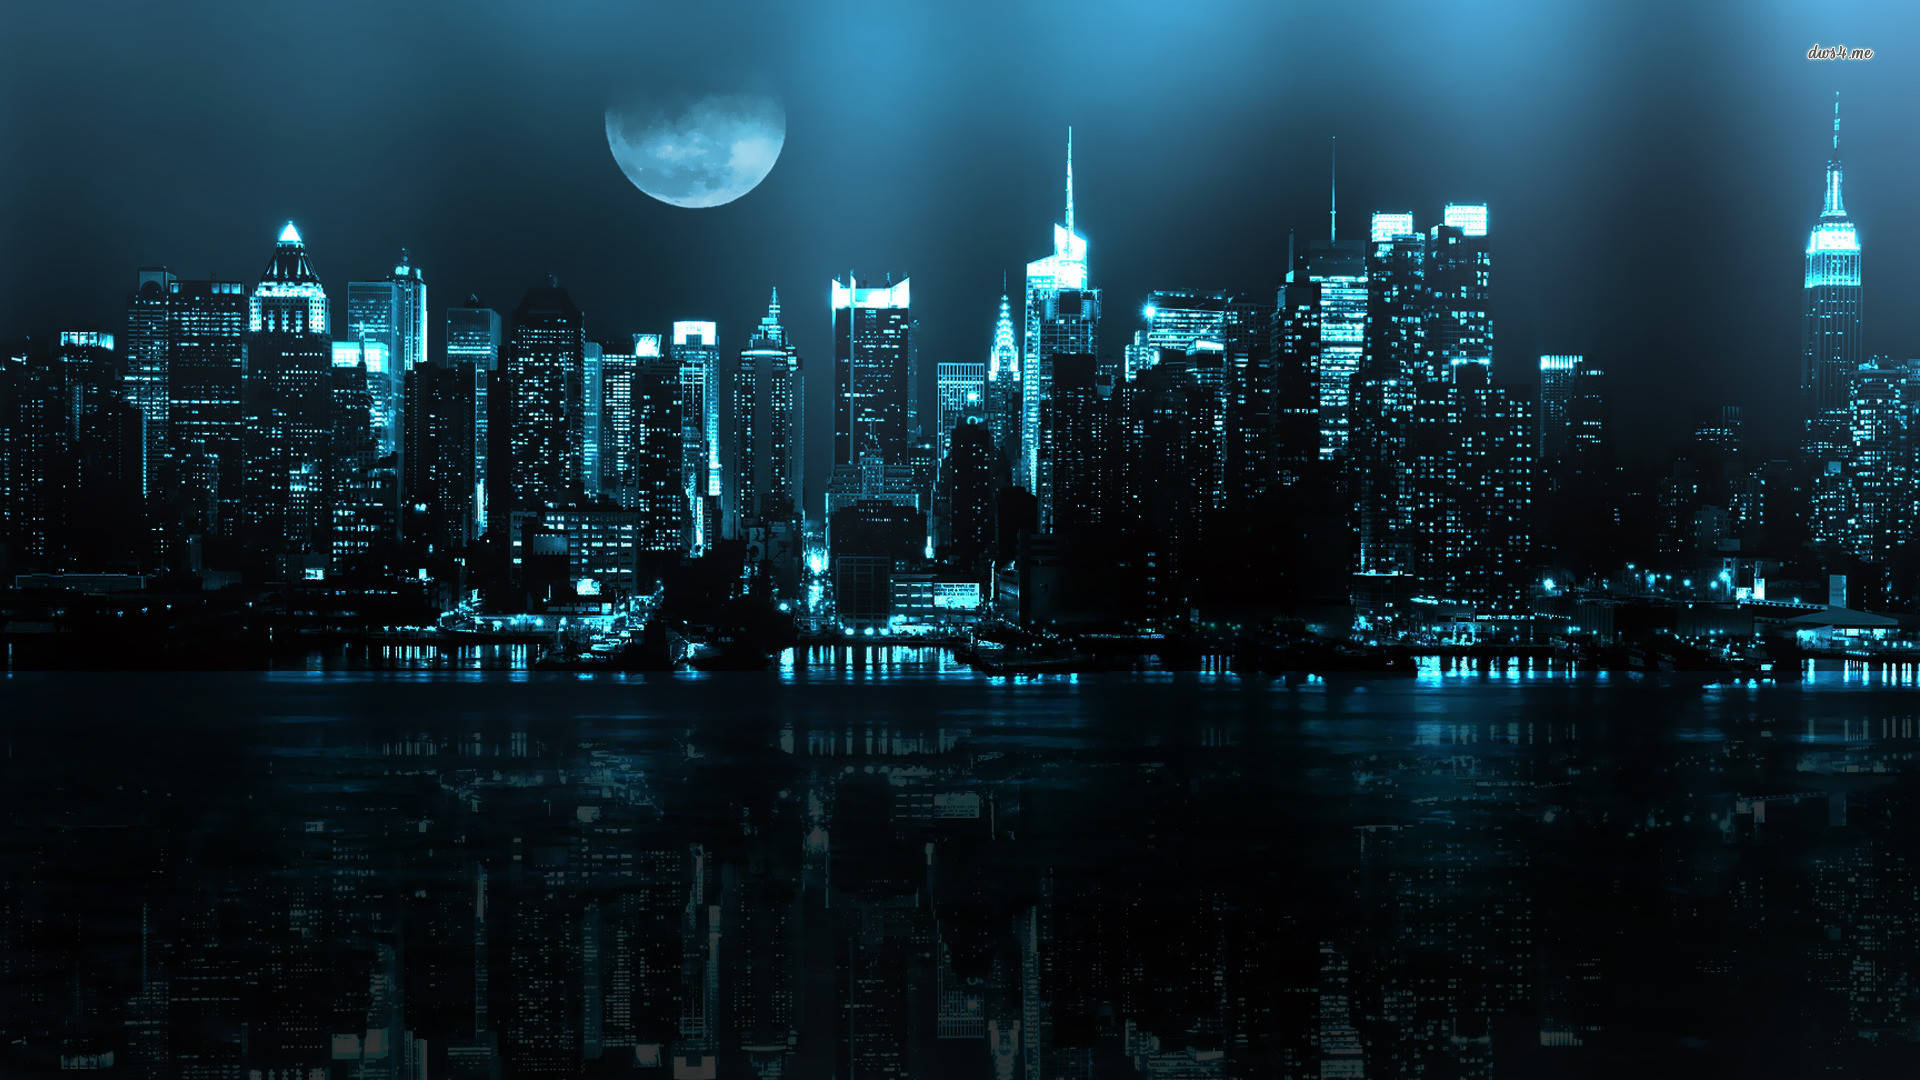 Fondods De Noche En La Ciudad De Nueva York